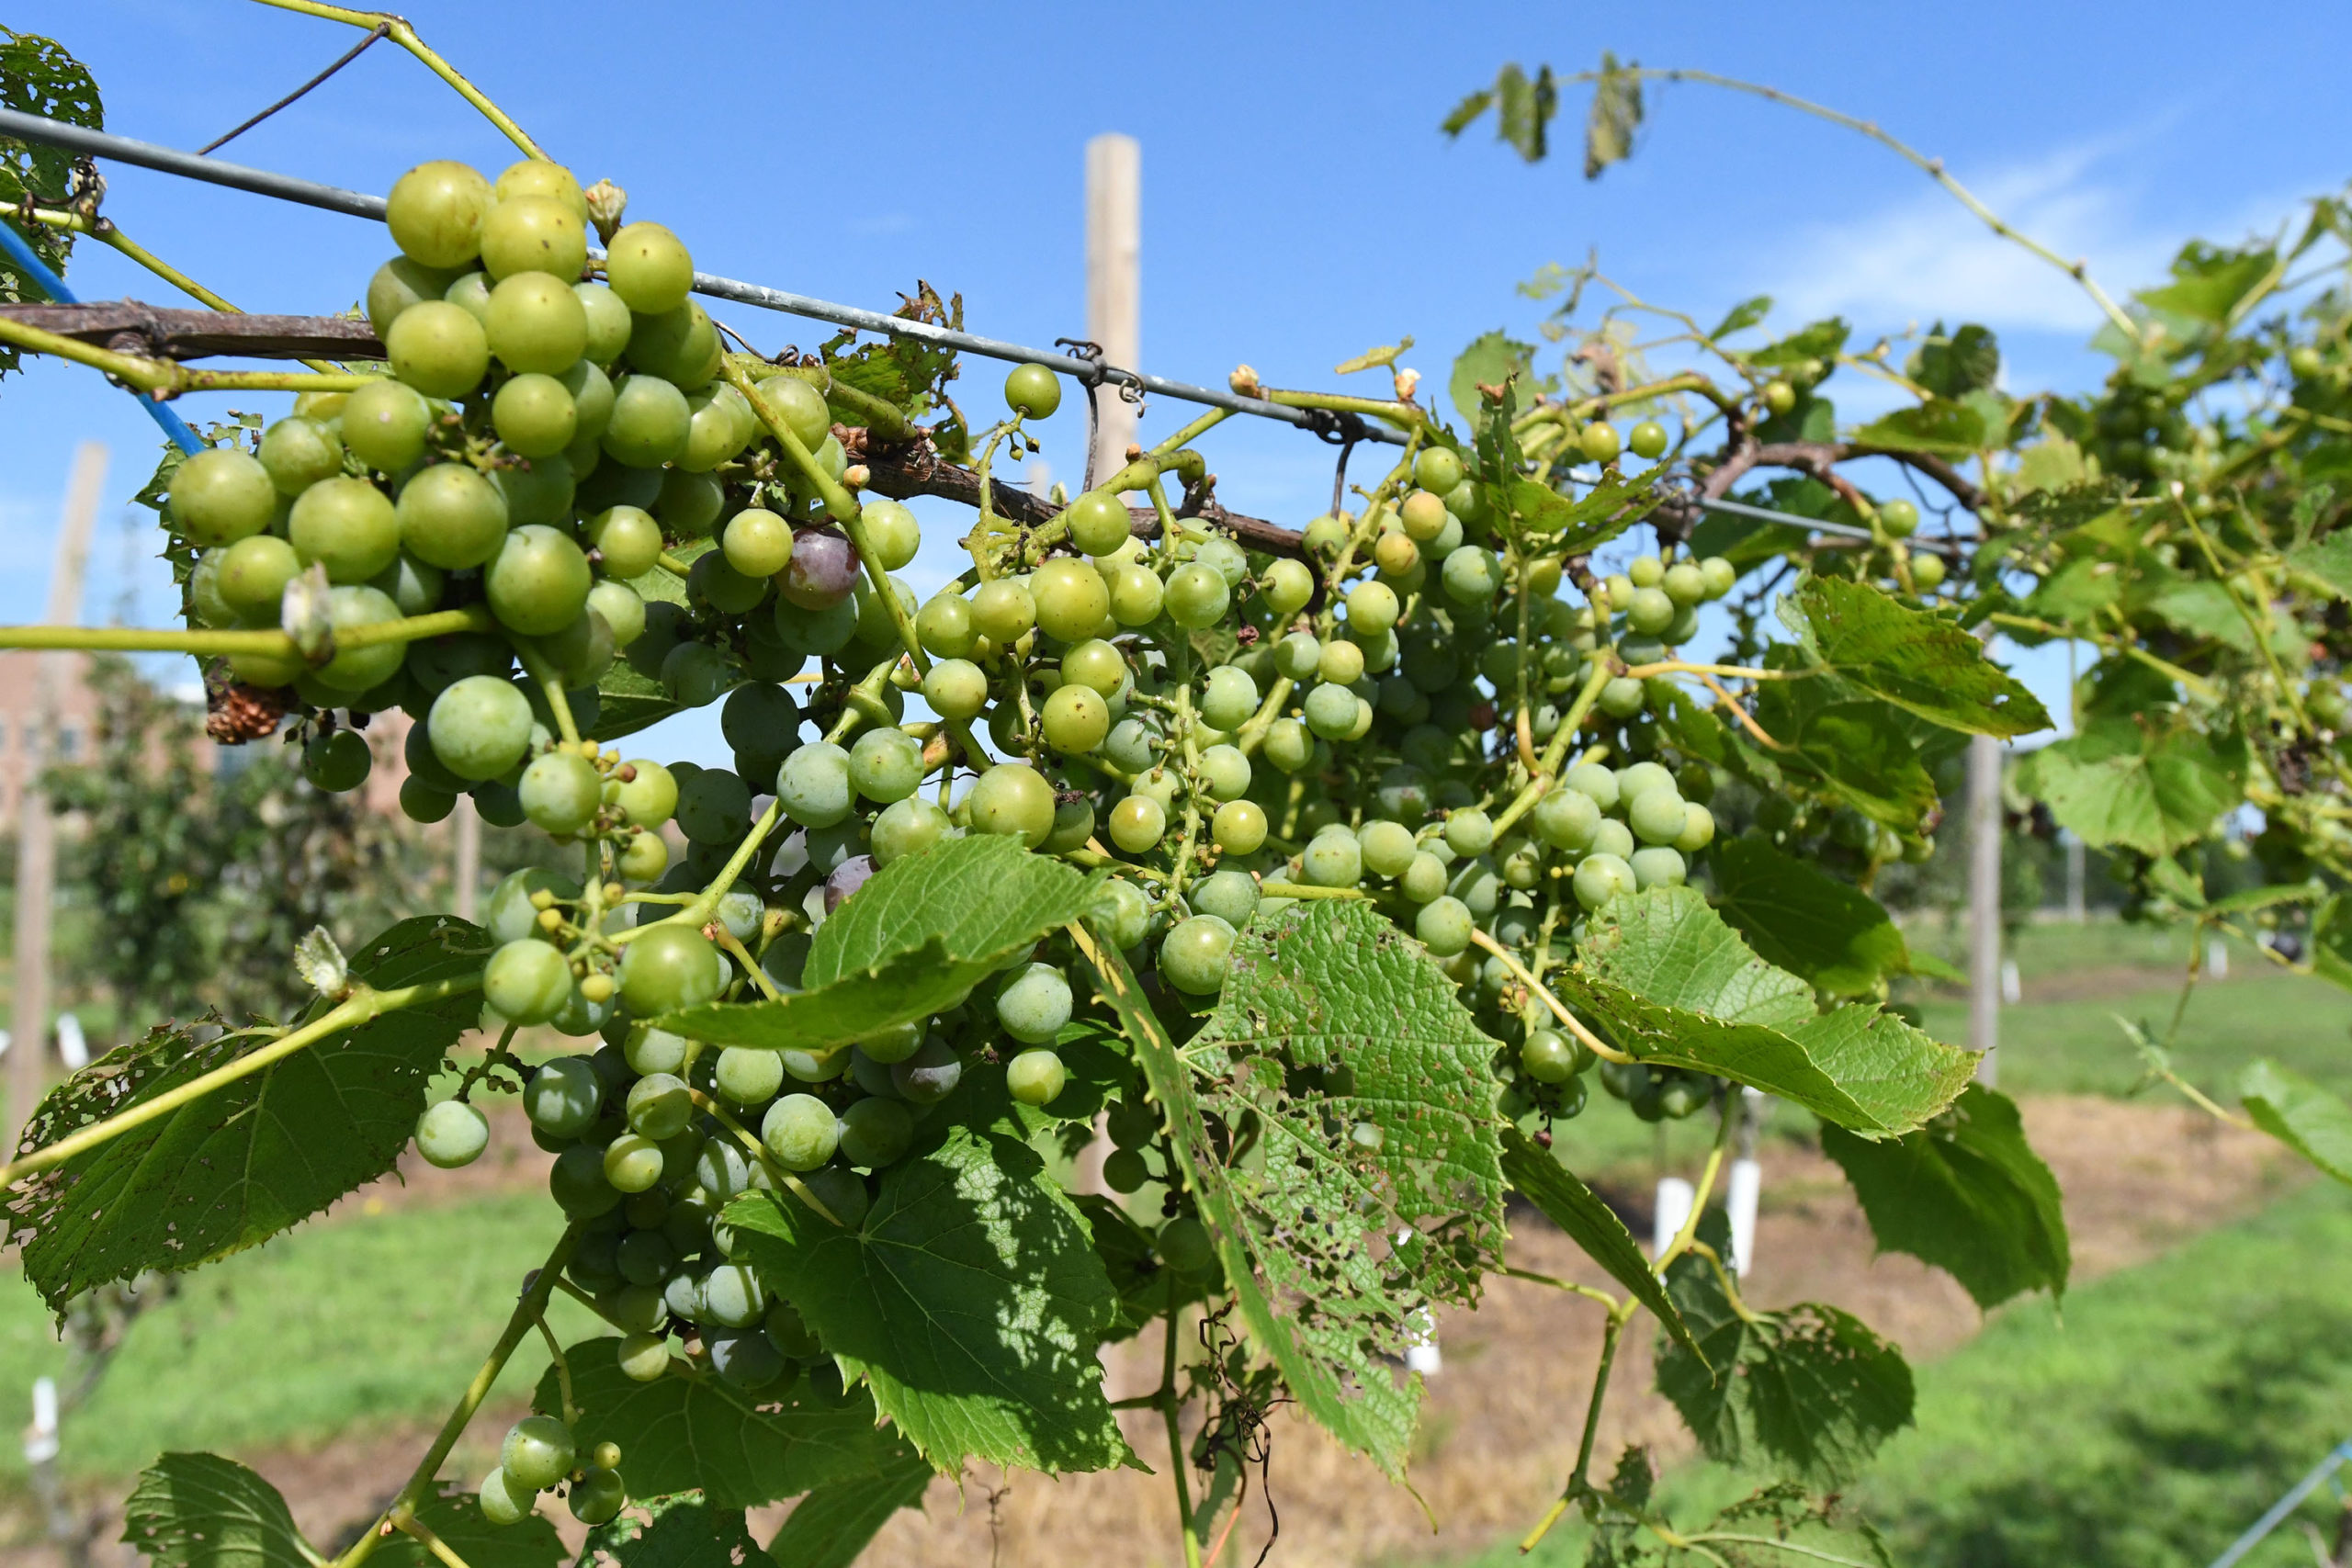 UMES Extension grape vines